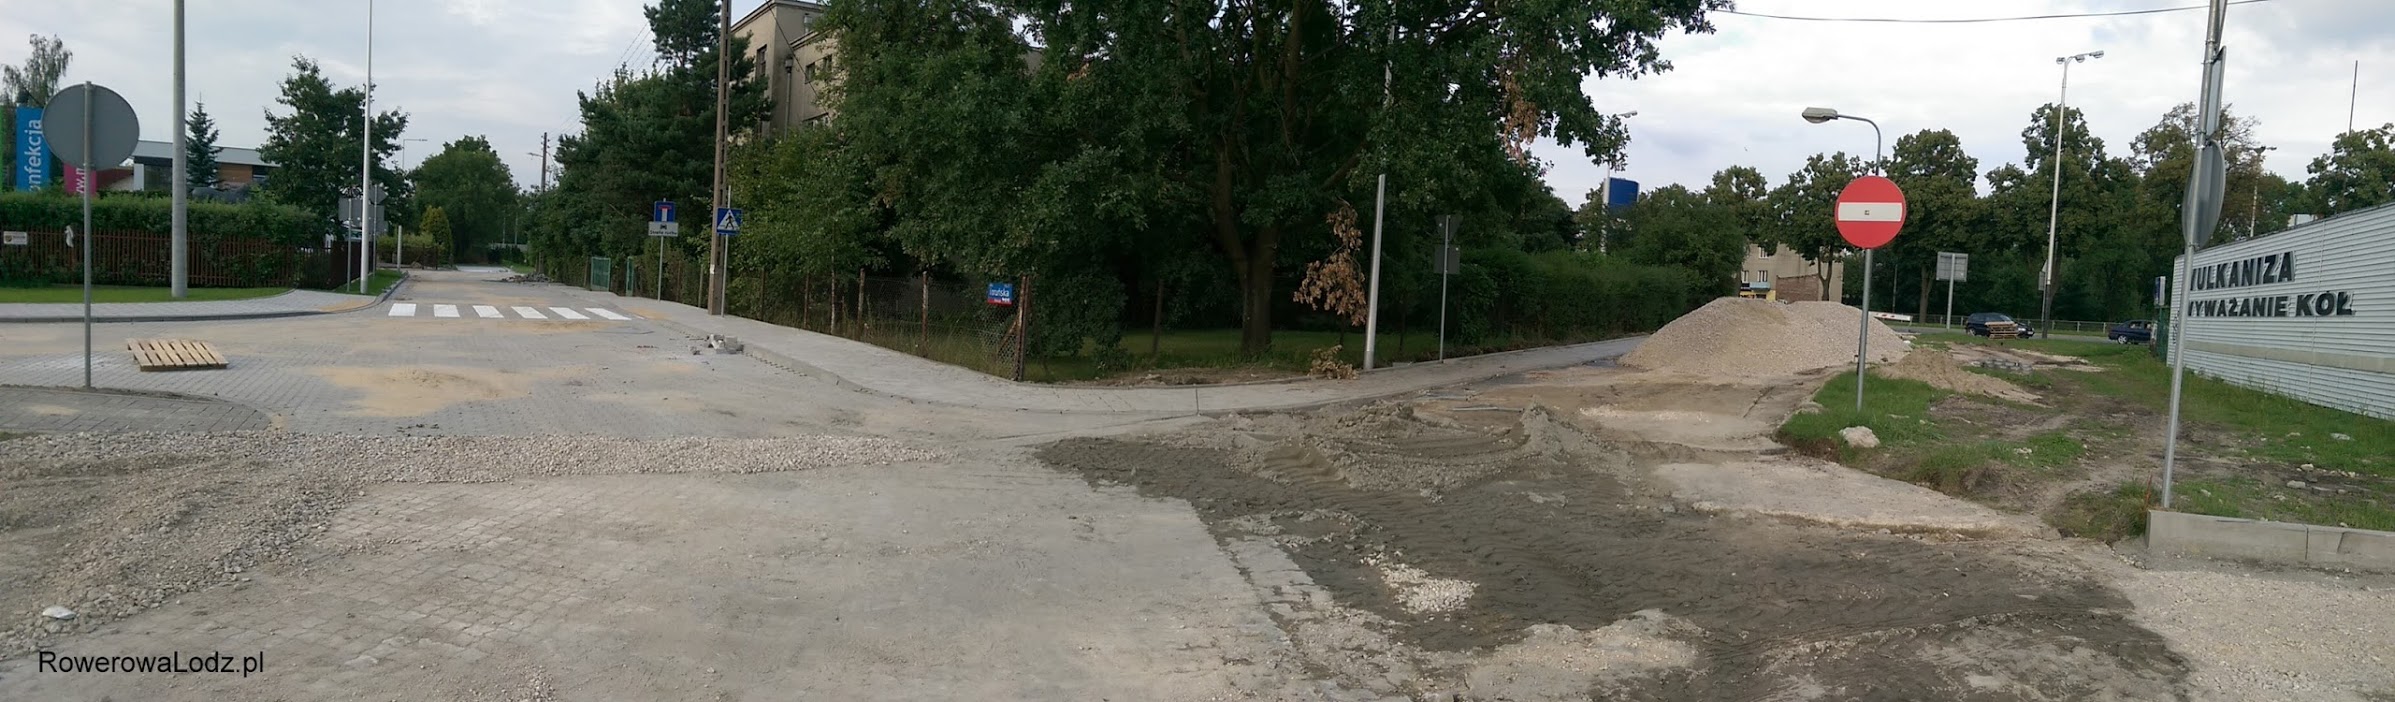 Przy ulicy Toruńskiej widać postęp prac na ulicy, nie zaś przy drodze dla rowerów